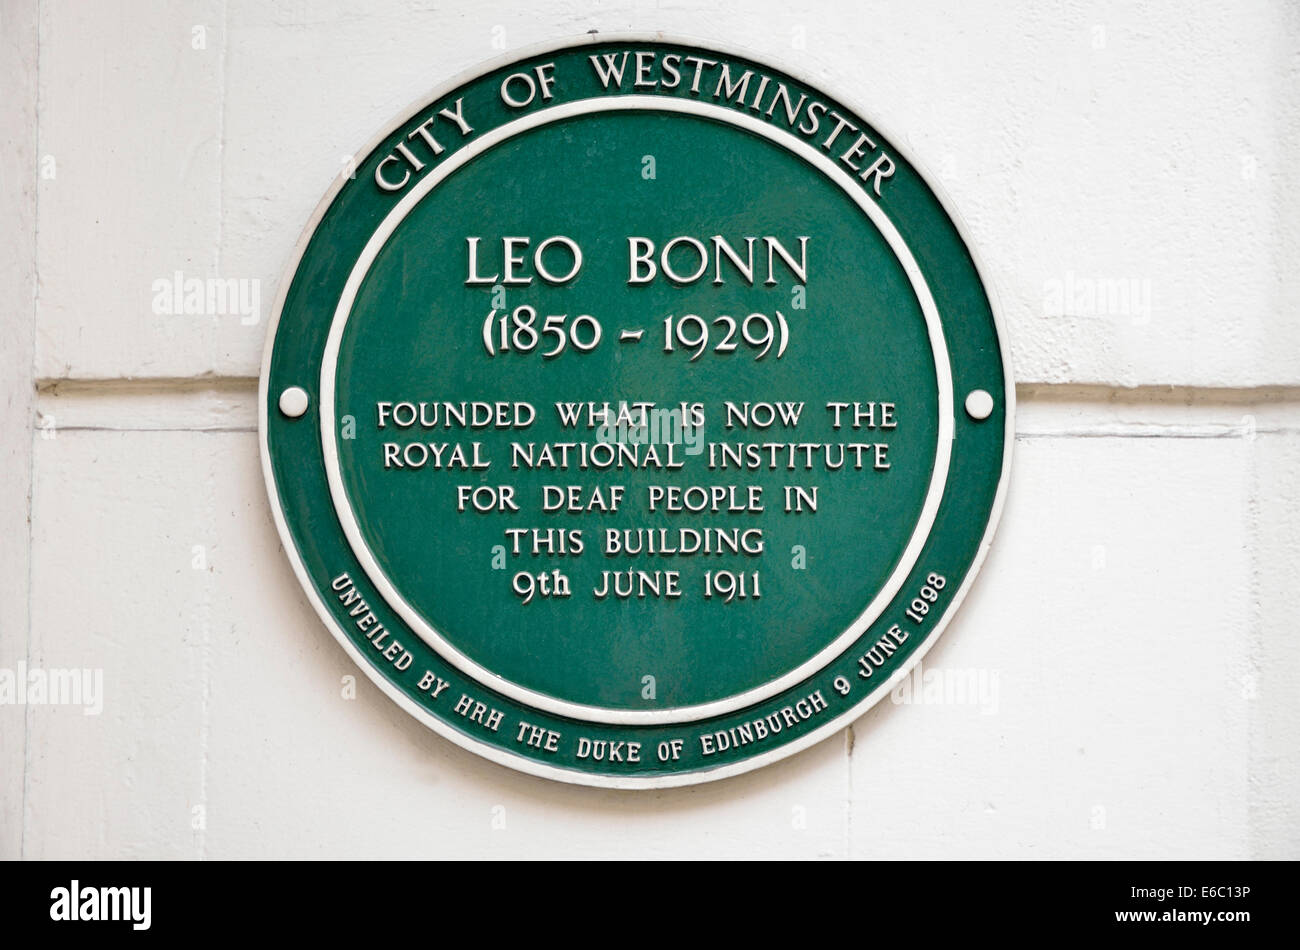 Londra, Inghilterra, Regno Unito. Una lapide commemorativa per il Leone di Bonn (1850-1929) fonda l Istituto Nazionale Reale per i sordi in questo bui Foto Stock